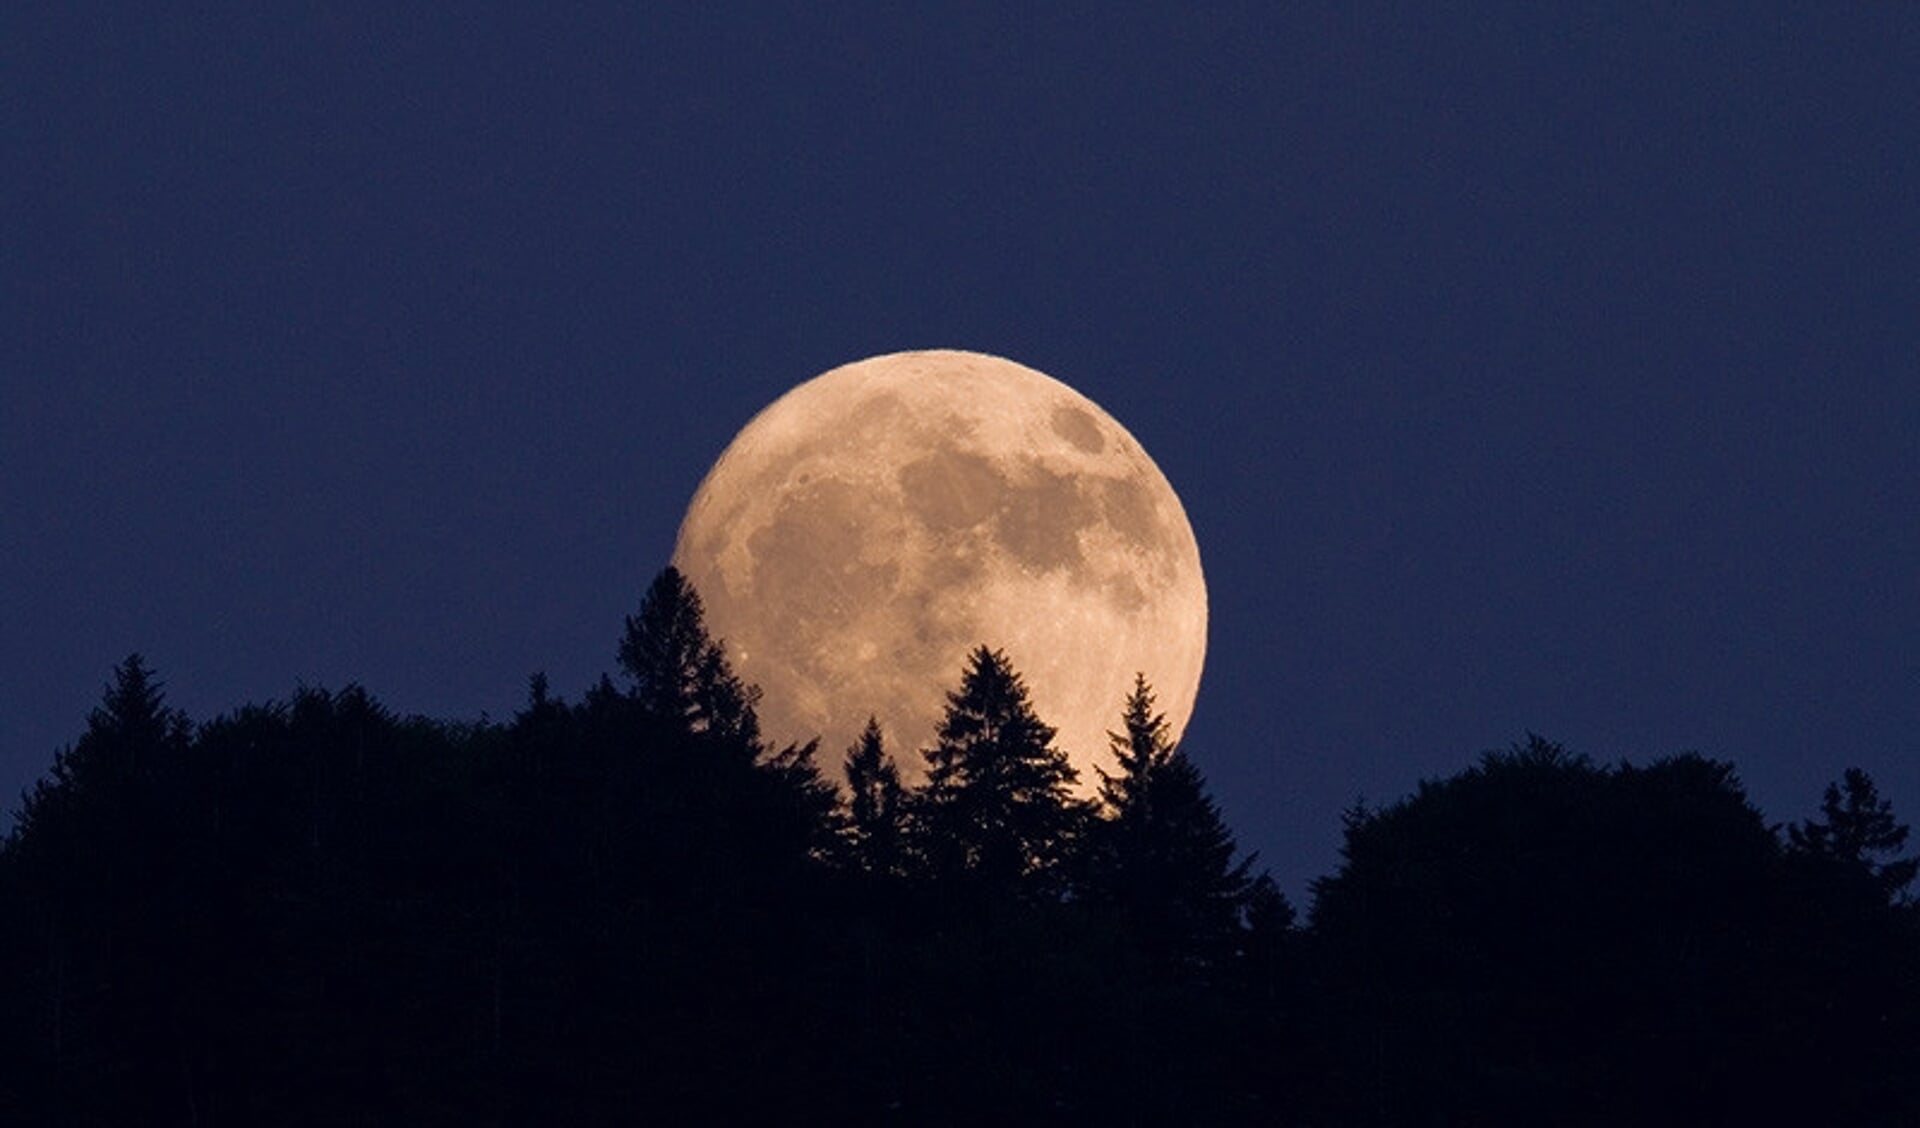 De sterrenwacht in Lattrop doet op 1 oktober mee aan het wereldwijde "Observe the Moon Night'".